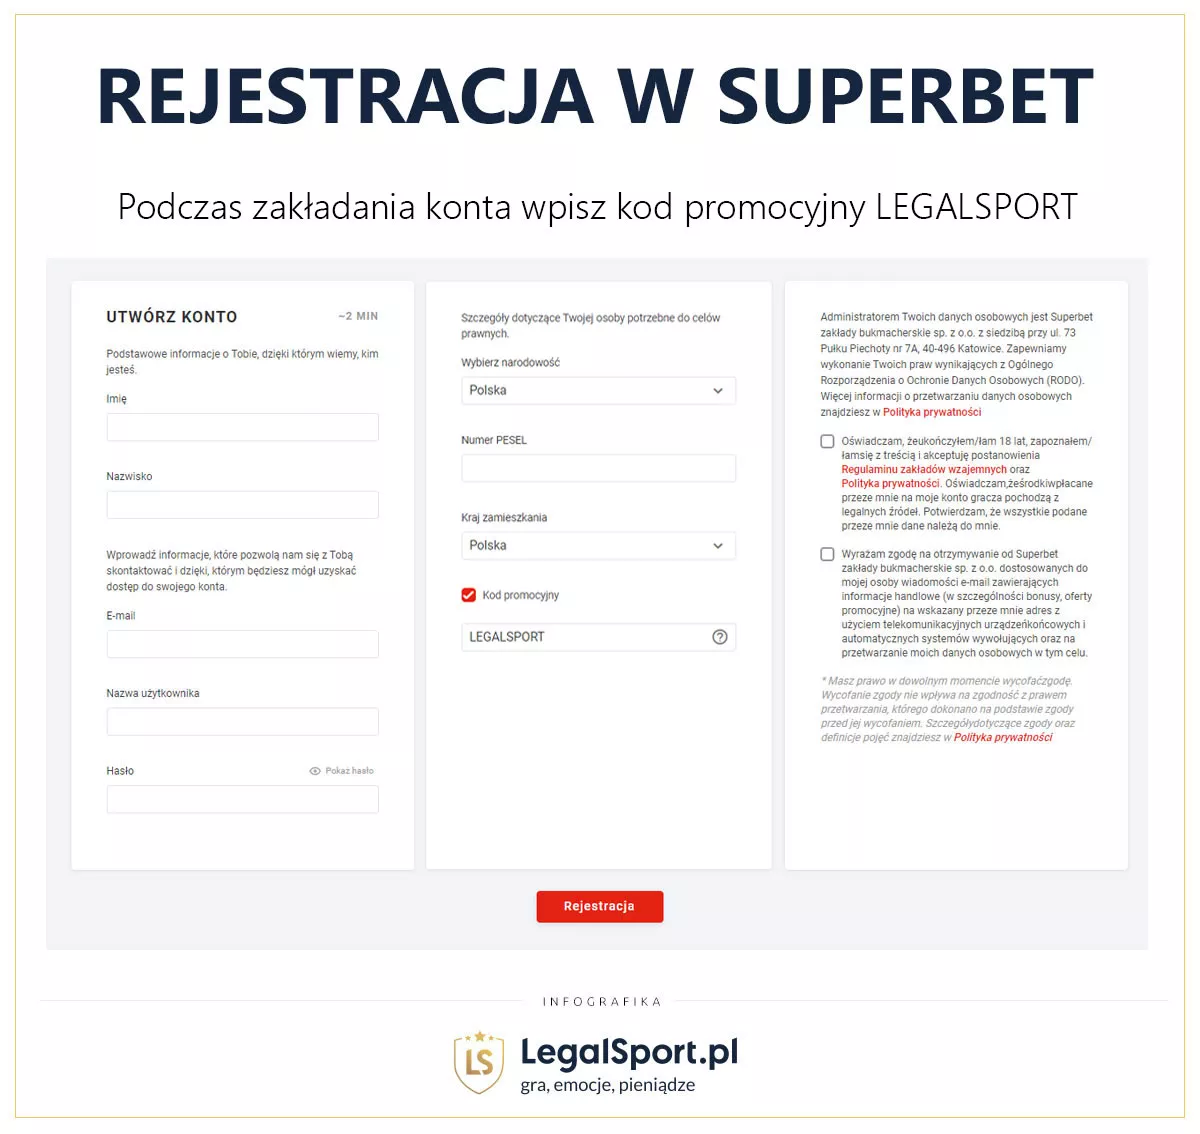 Rejestracja w Superbet - jak założyć konto z kodem promocyjnym